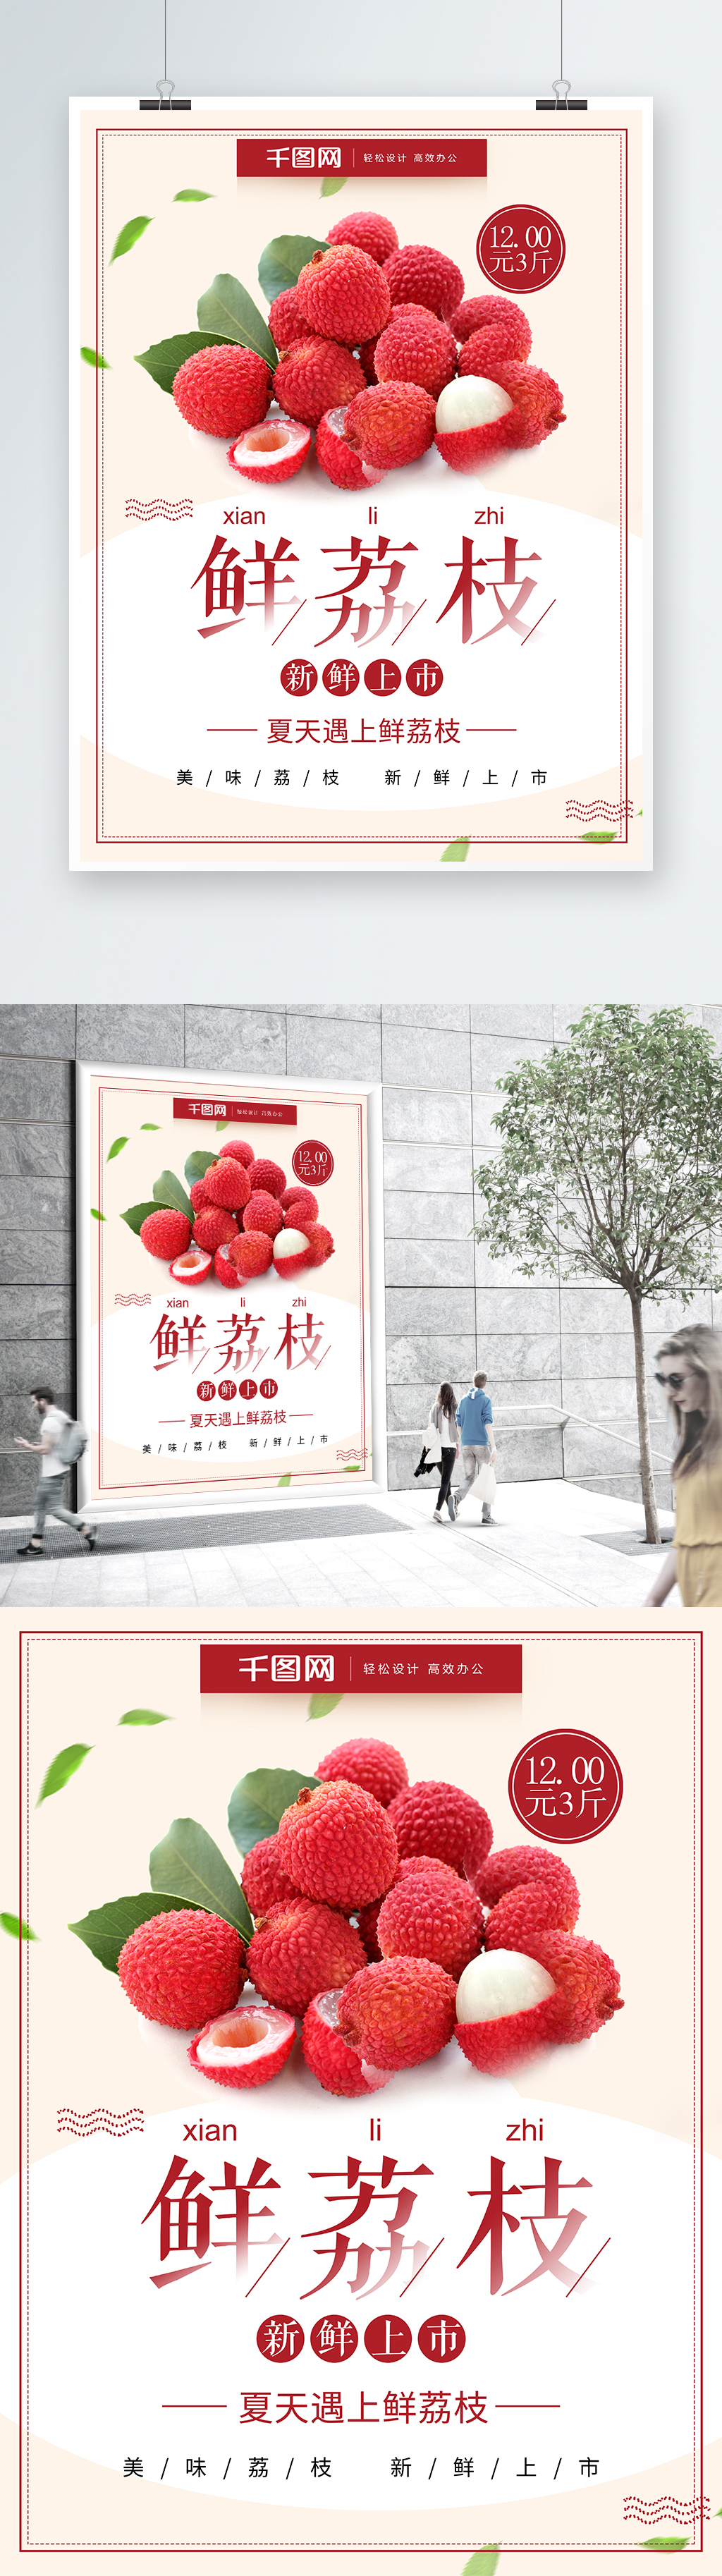 极简风荔枝新鲜荔枝水果店促销海报图片